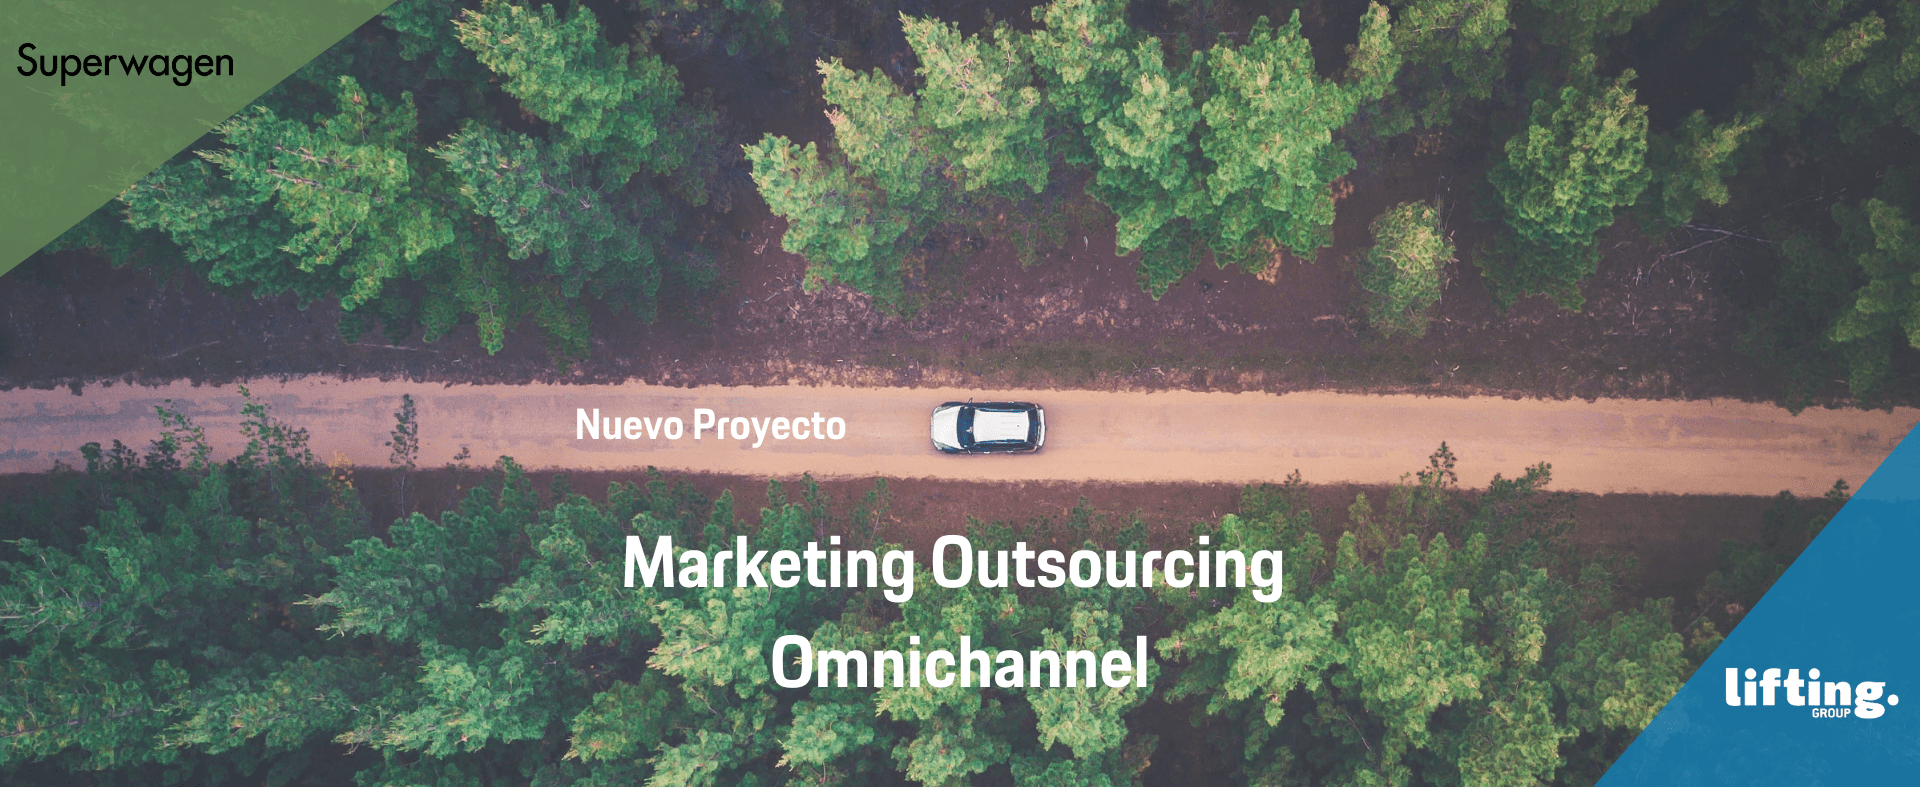 Superwagen y Lifting Group se vuelven a encontrar para retomar el servicio de Marketing Outsourcing Omnichannel